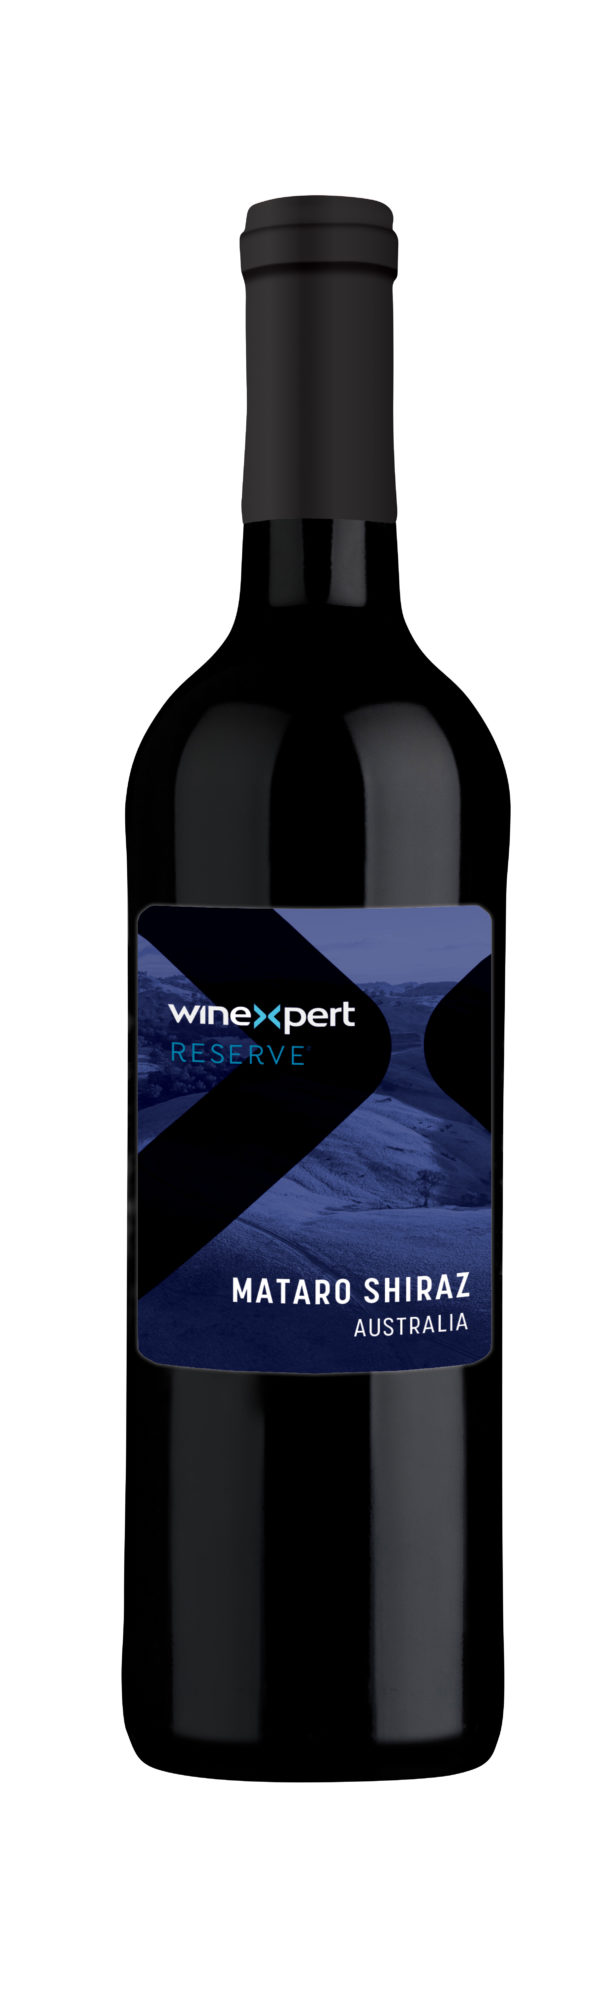 Winexpert Reserve Mataro Shiraz